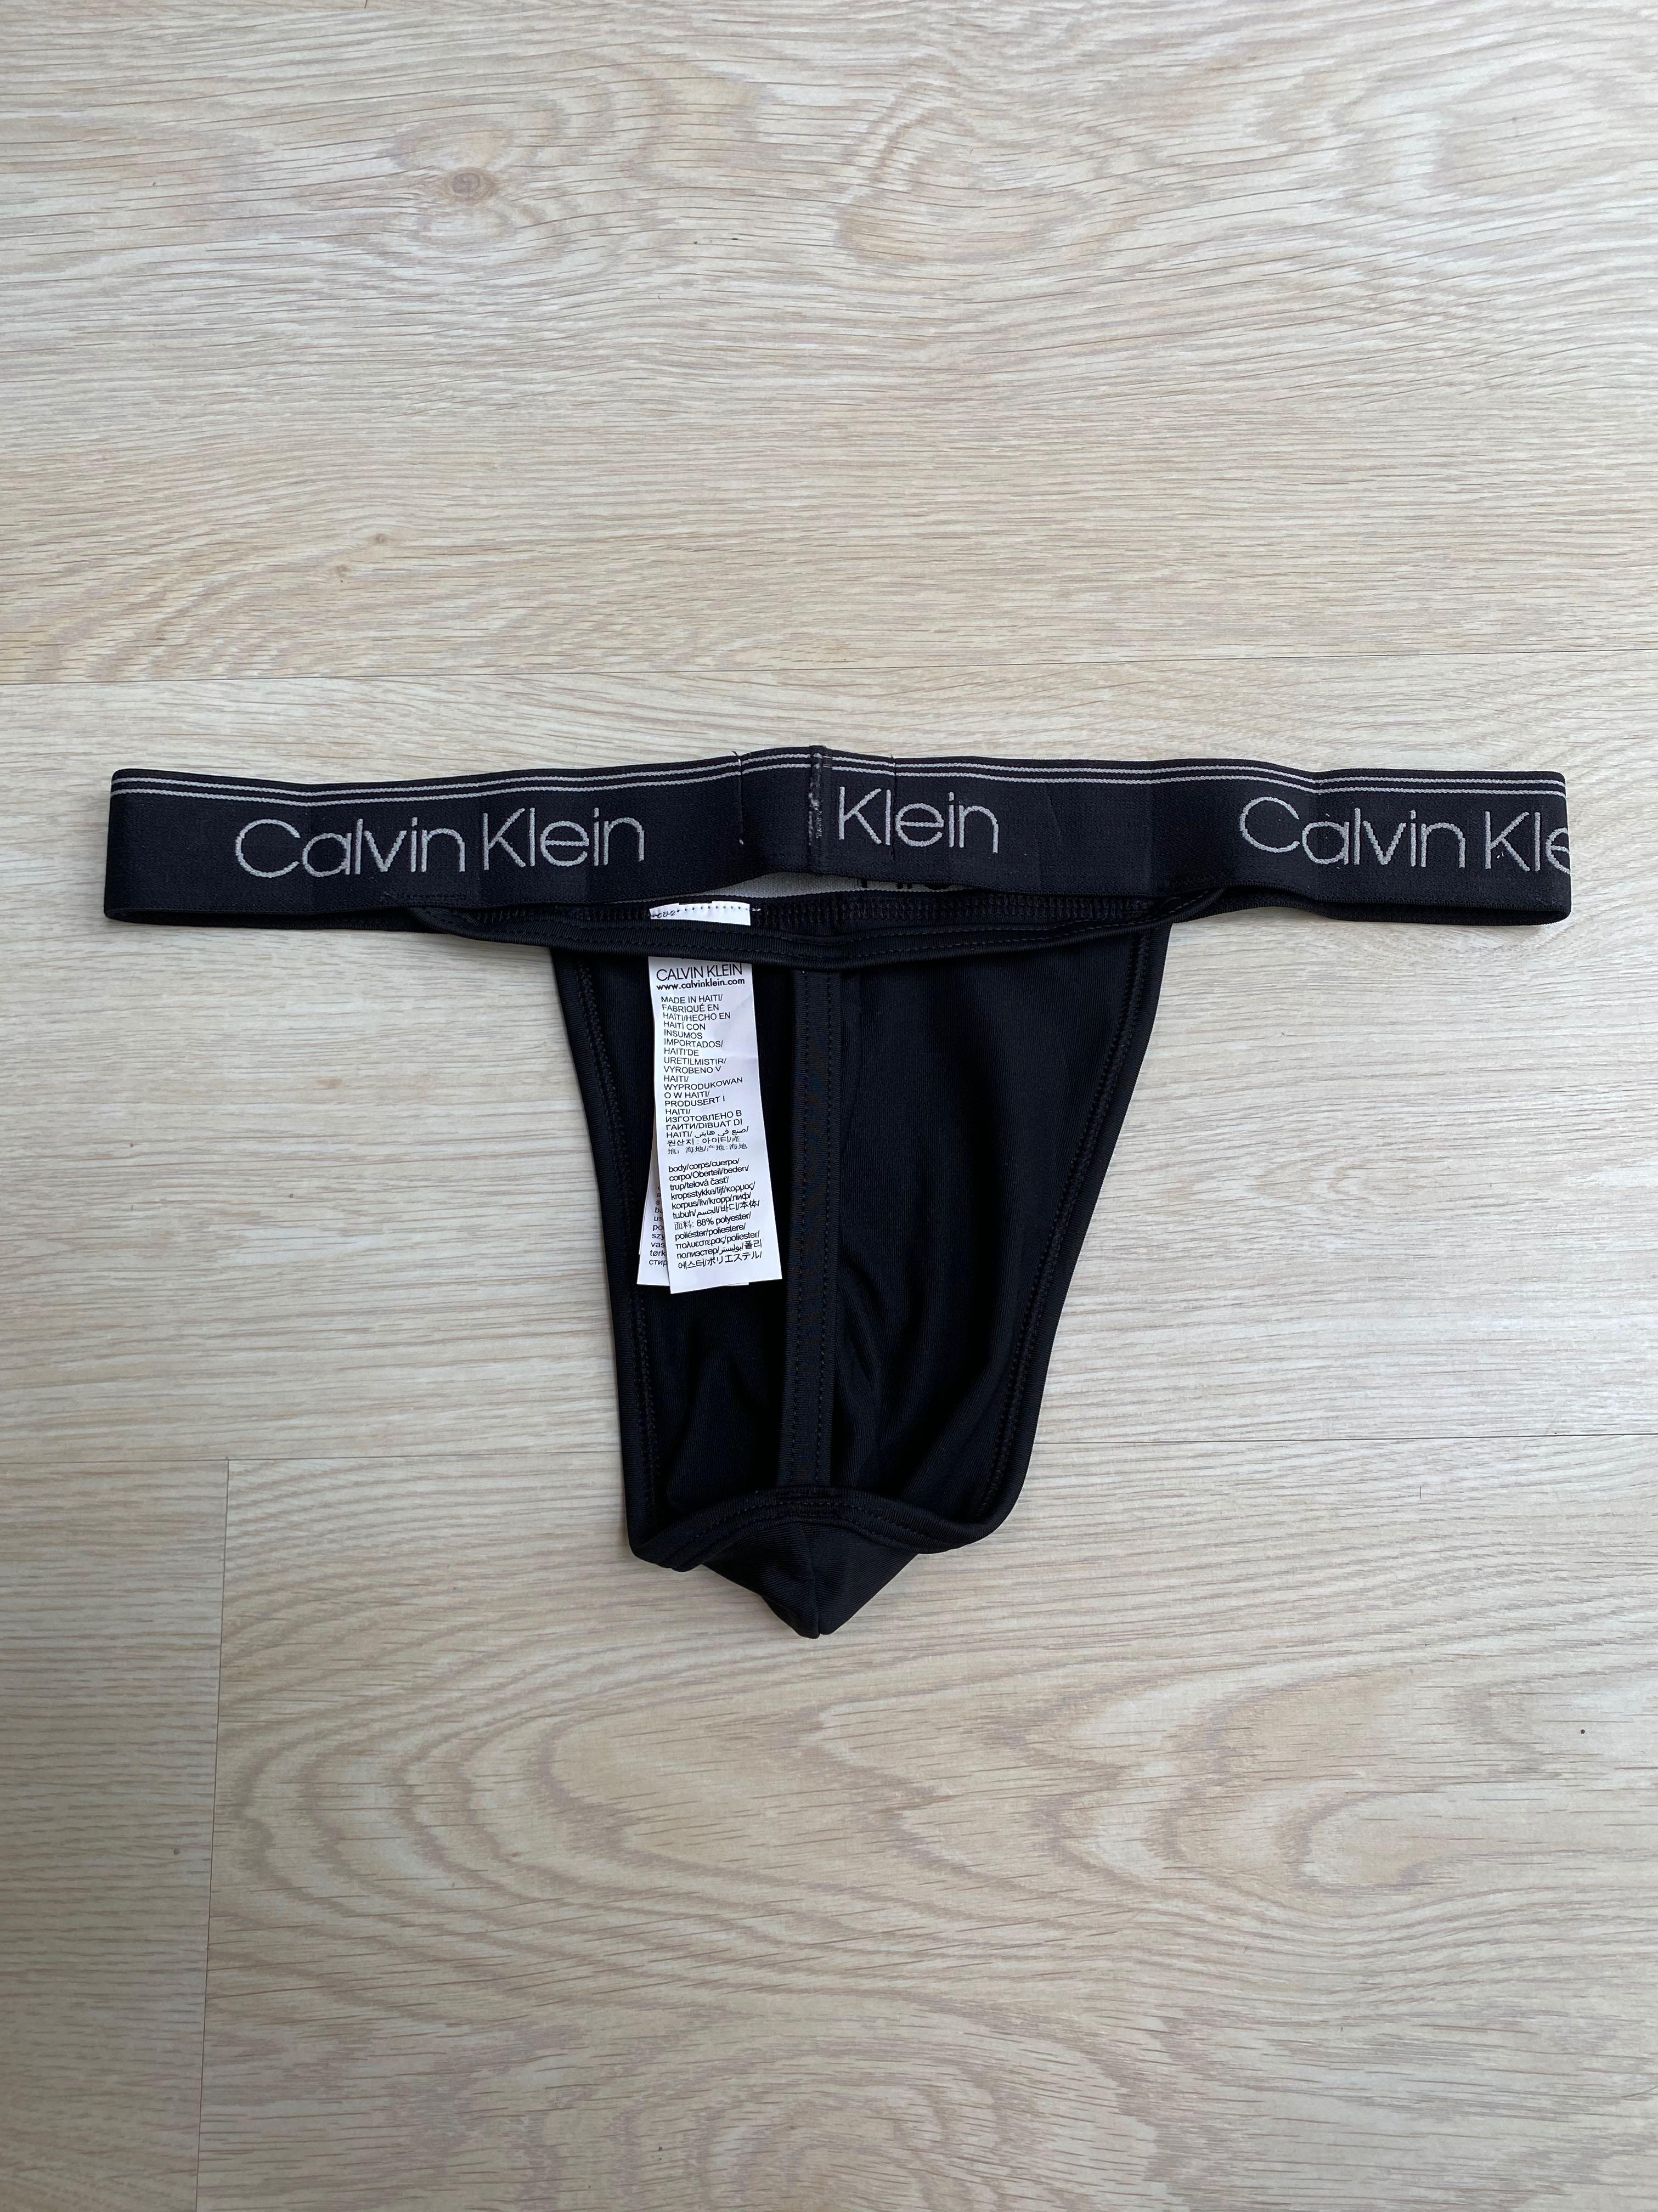 M) Calvin Klein Men Thong Underwear, Men's Fashion, Bottoms, New Underwear  on Carousell